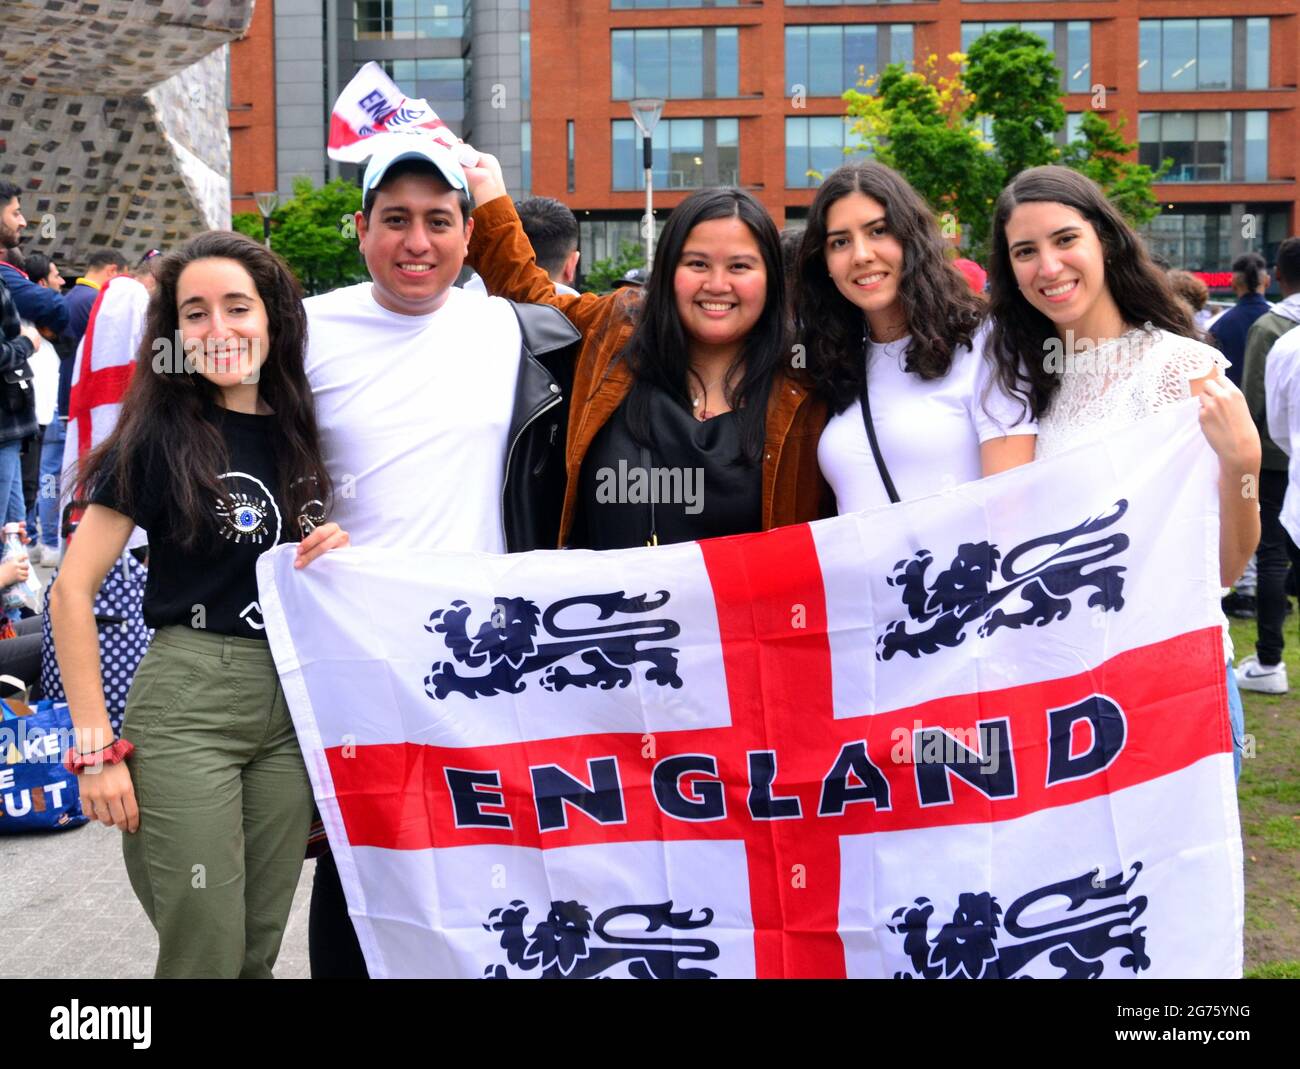 Supporters de l'équipe de football d'Angleterre, exubérant dans le centre de Manchester, Angleterre, Royaume-Uni, dans l'après-midi du dimanche 11 juillet 2021, avant la finale Angleterre contre Italie euros football. Banque D'Images